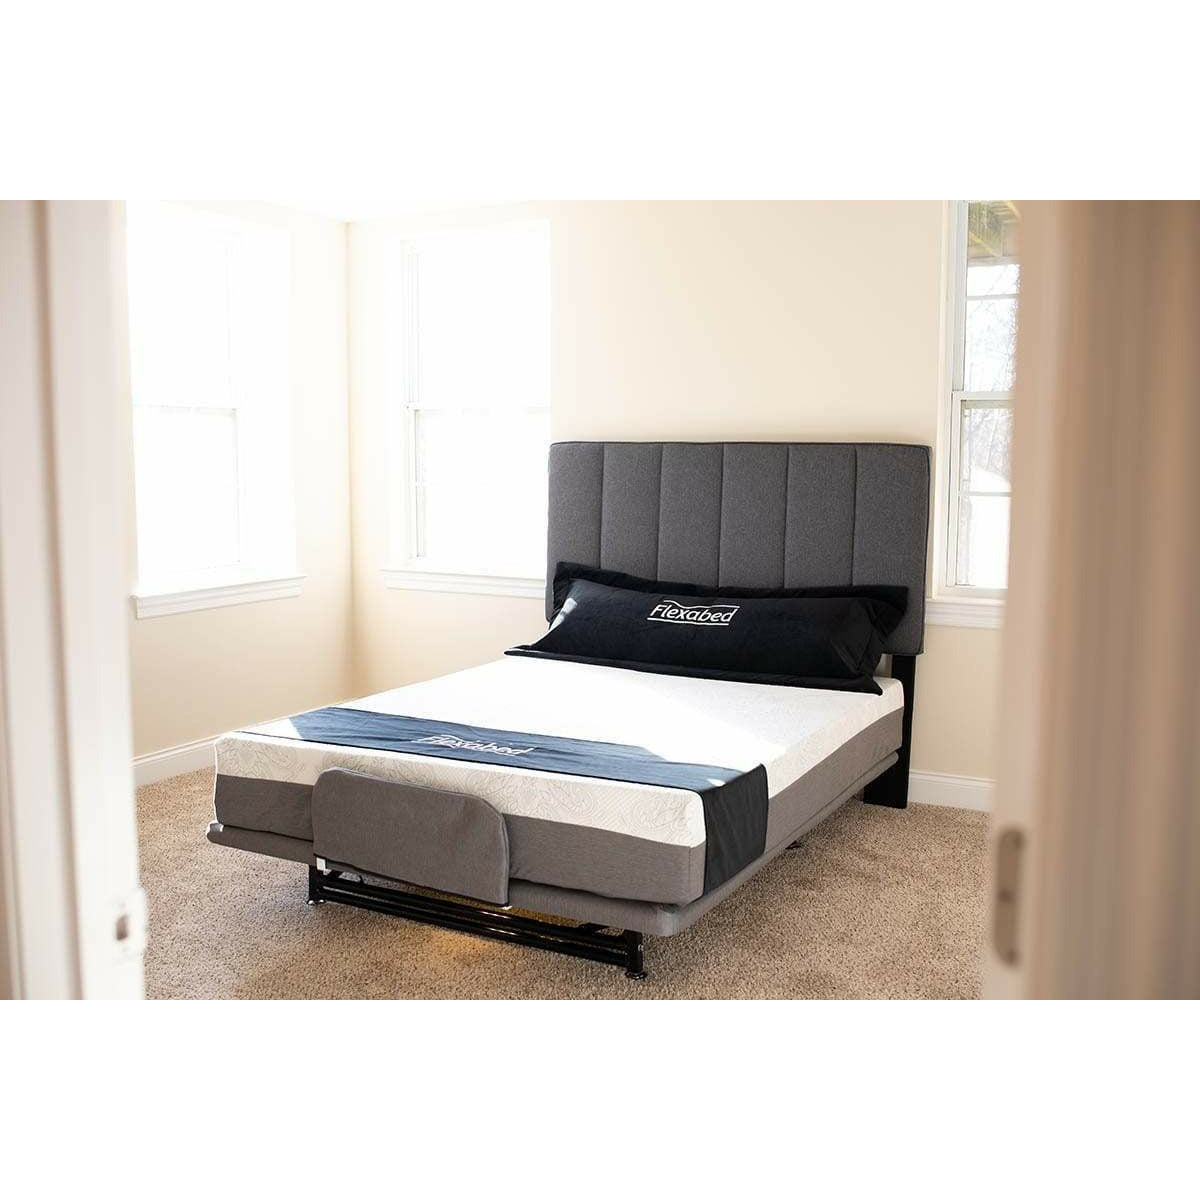 ConvaQuip Beds Accessories by ConvaQuip FLEXABED Hi-Low SL Adjustable Bed